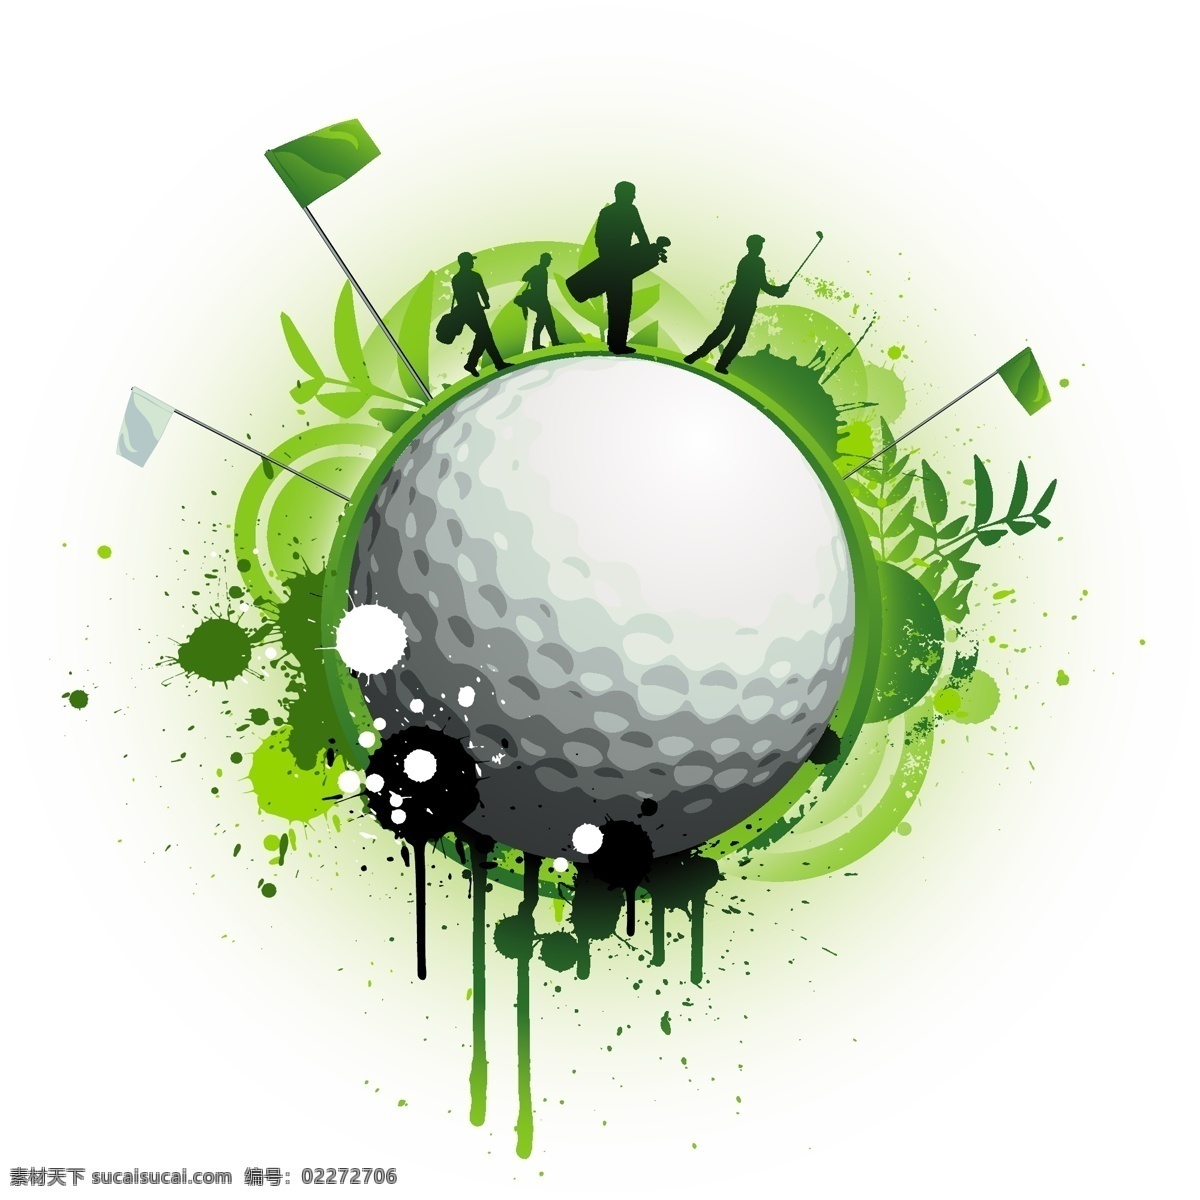 高尔夫 足球图片 其他设计 矢量图库 小图标 足球 矢量 模板下载 高尔夫与足球 日常生活